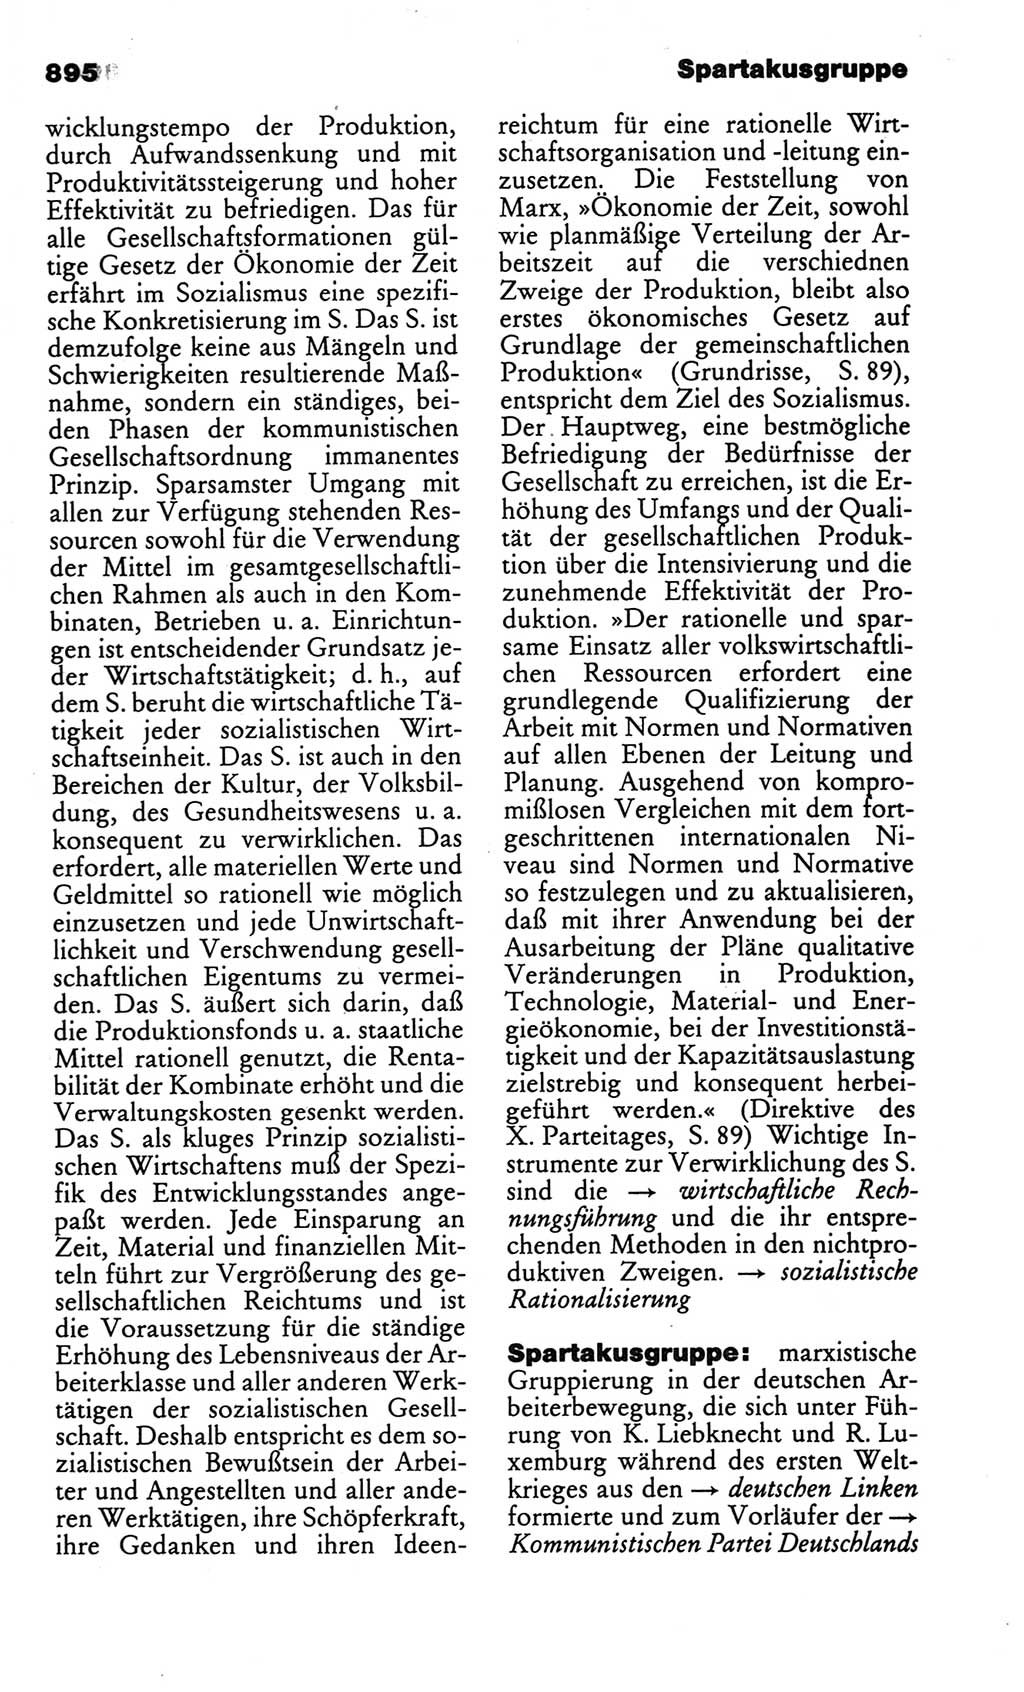 Kleines politisches Wörterbuch [Deutsche Demokratische Republik (DDR)] 1986, Seite 895 (Kl. pol. Wb. DDR 1986, S. 895)